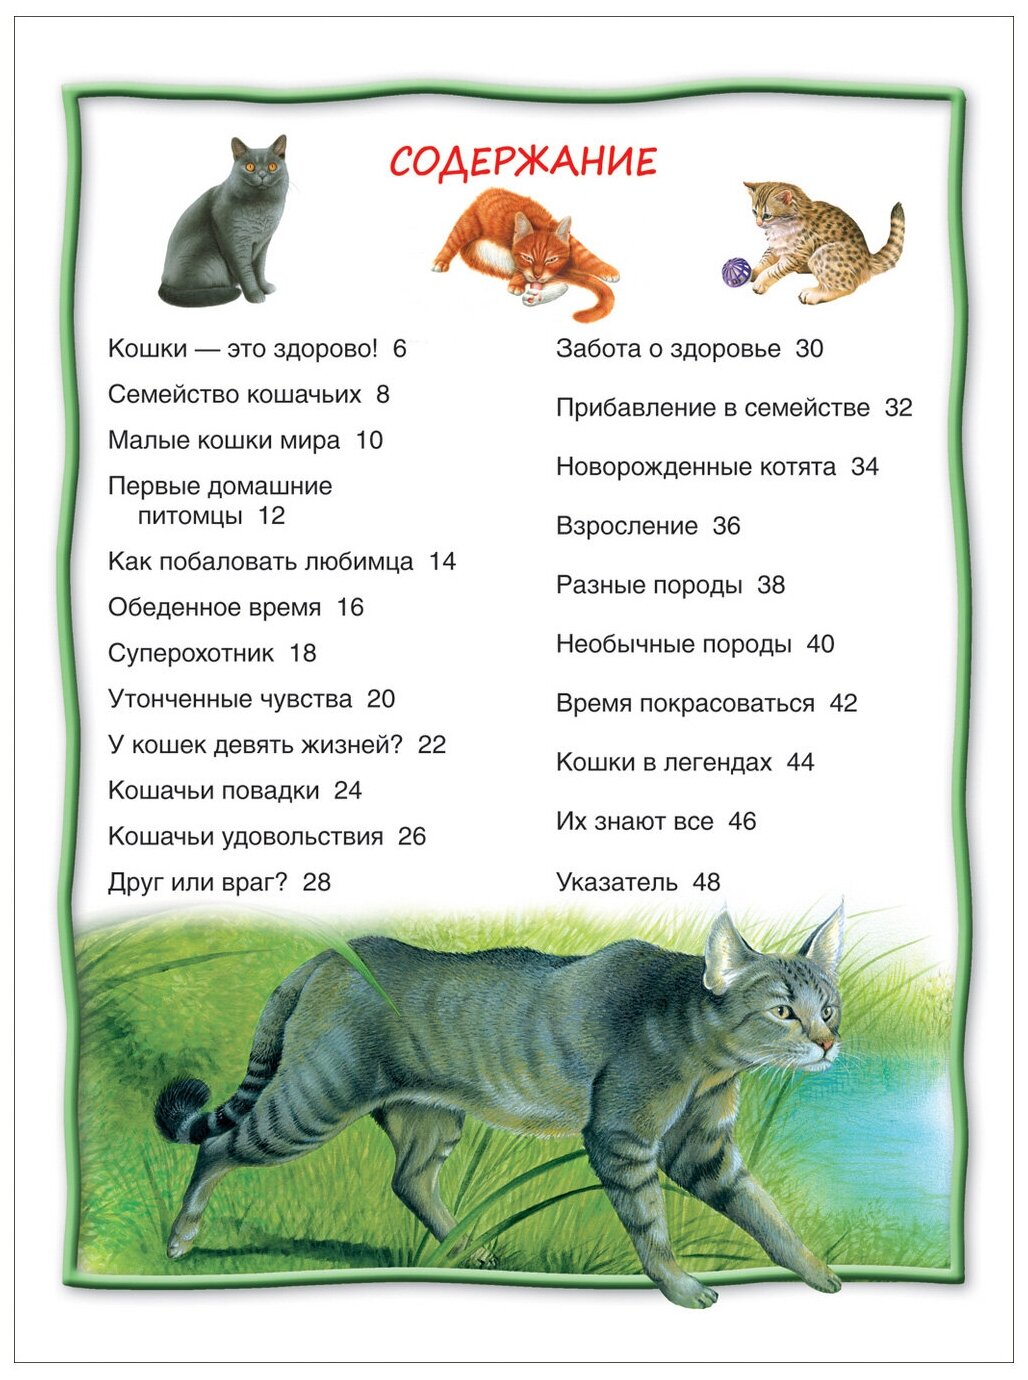 8 познавательных фактов о лапах кошек